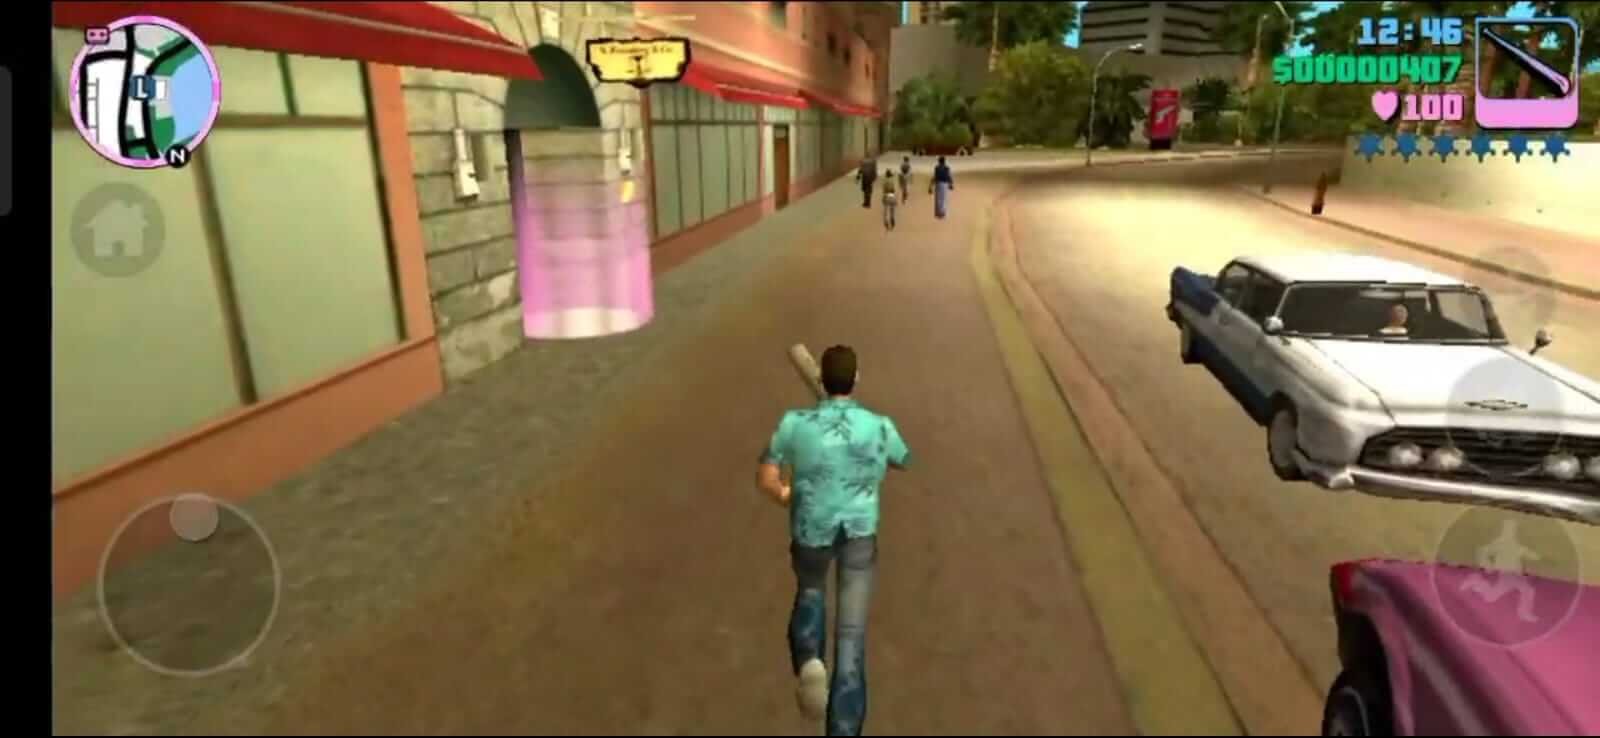 Baixe o GTA Grand Theft Auto Vice City MOD APK v1.12 (Dinheiro